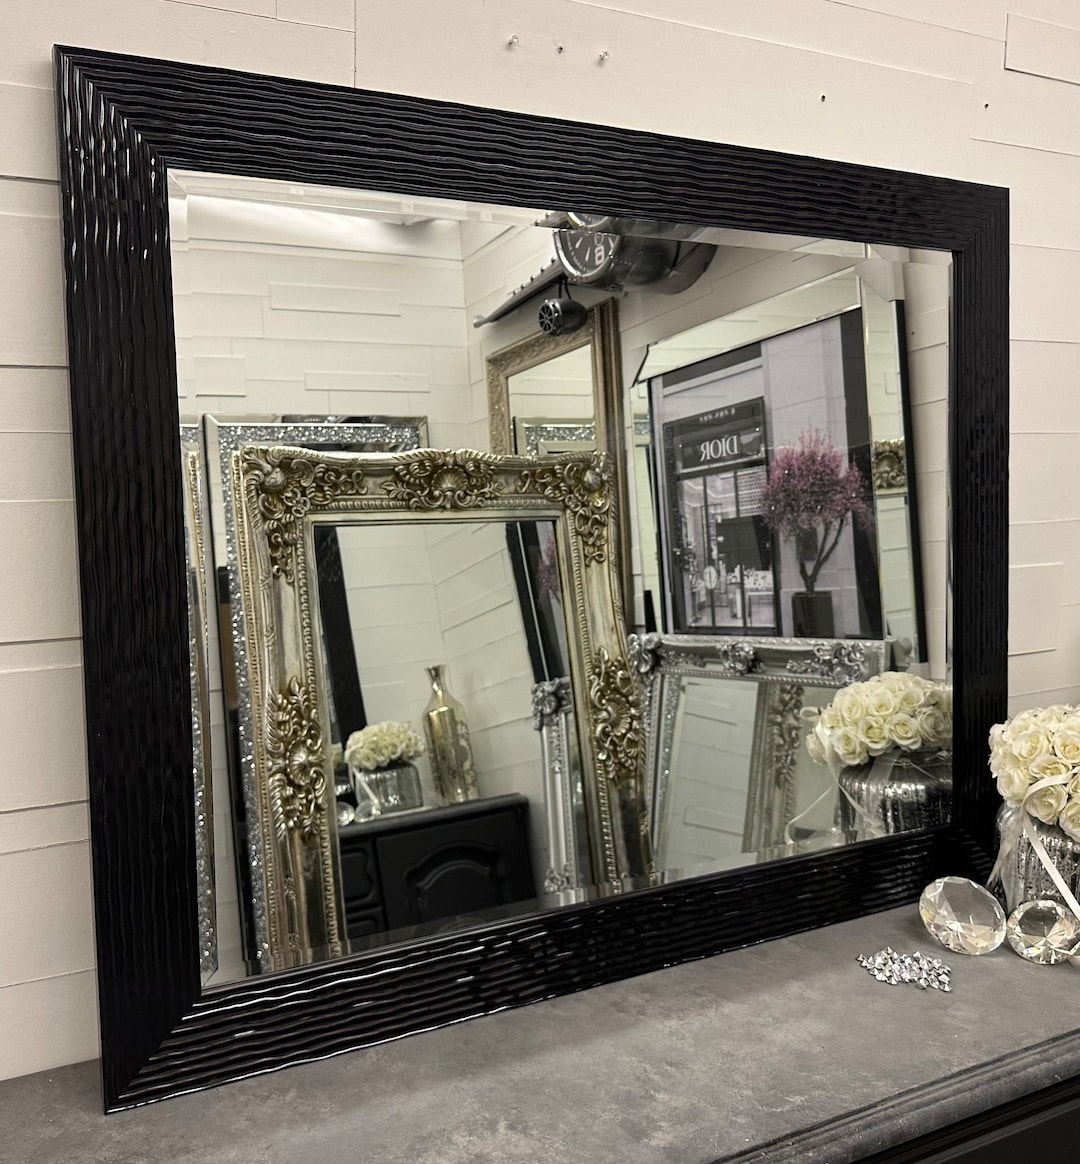 Espejo grande con marco negro Efecto de metal fundido Elegante